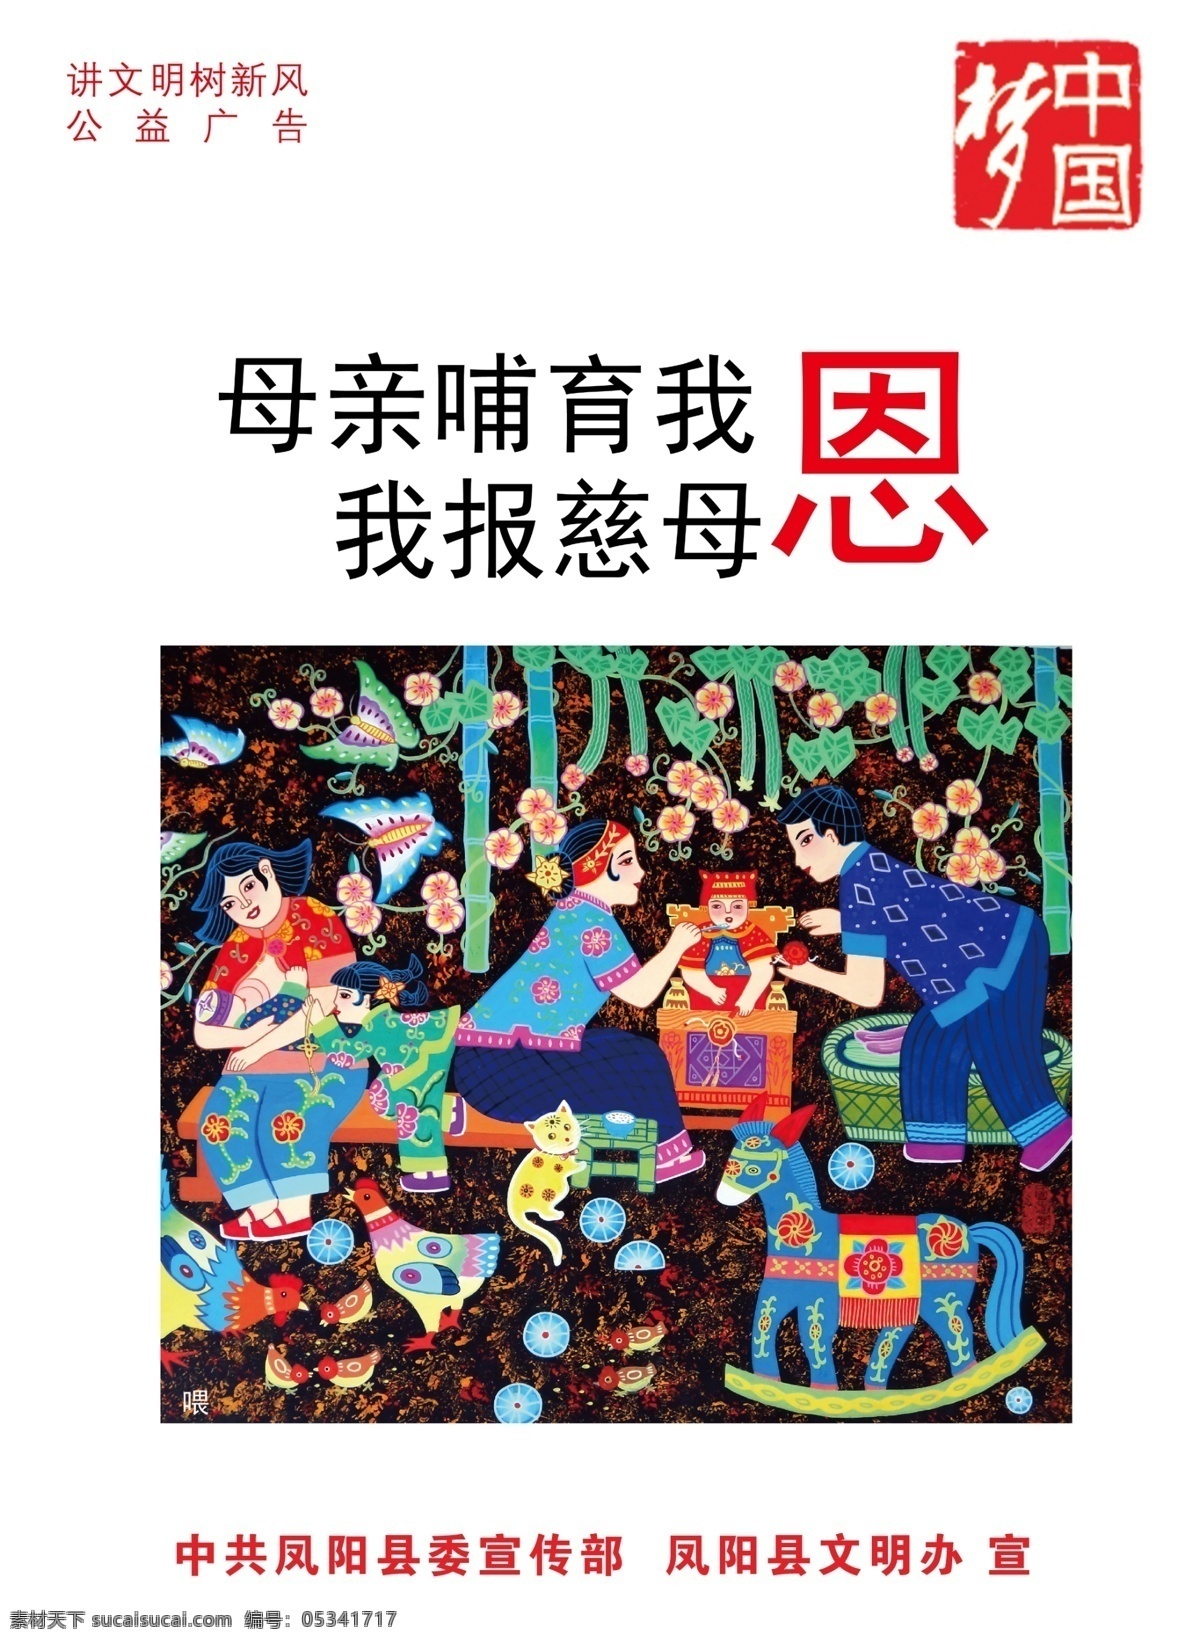 中国梦海报 中国梦 梦 宣传 标语 文明 公益 广告 彩色 道化师 广告设计模板 源文件